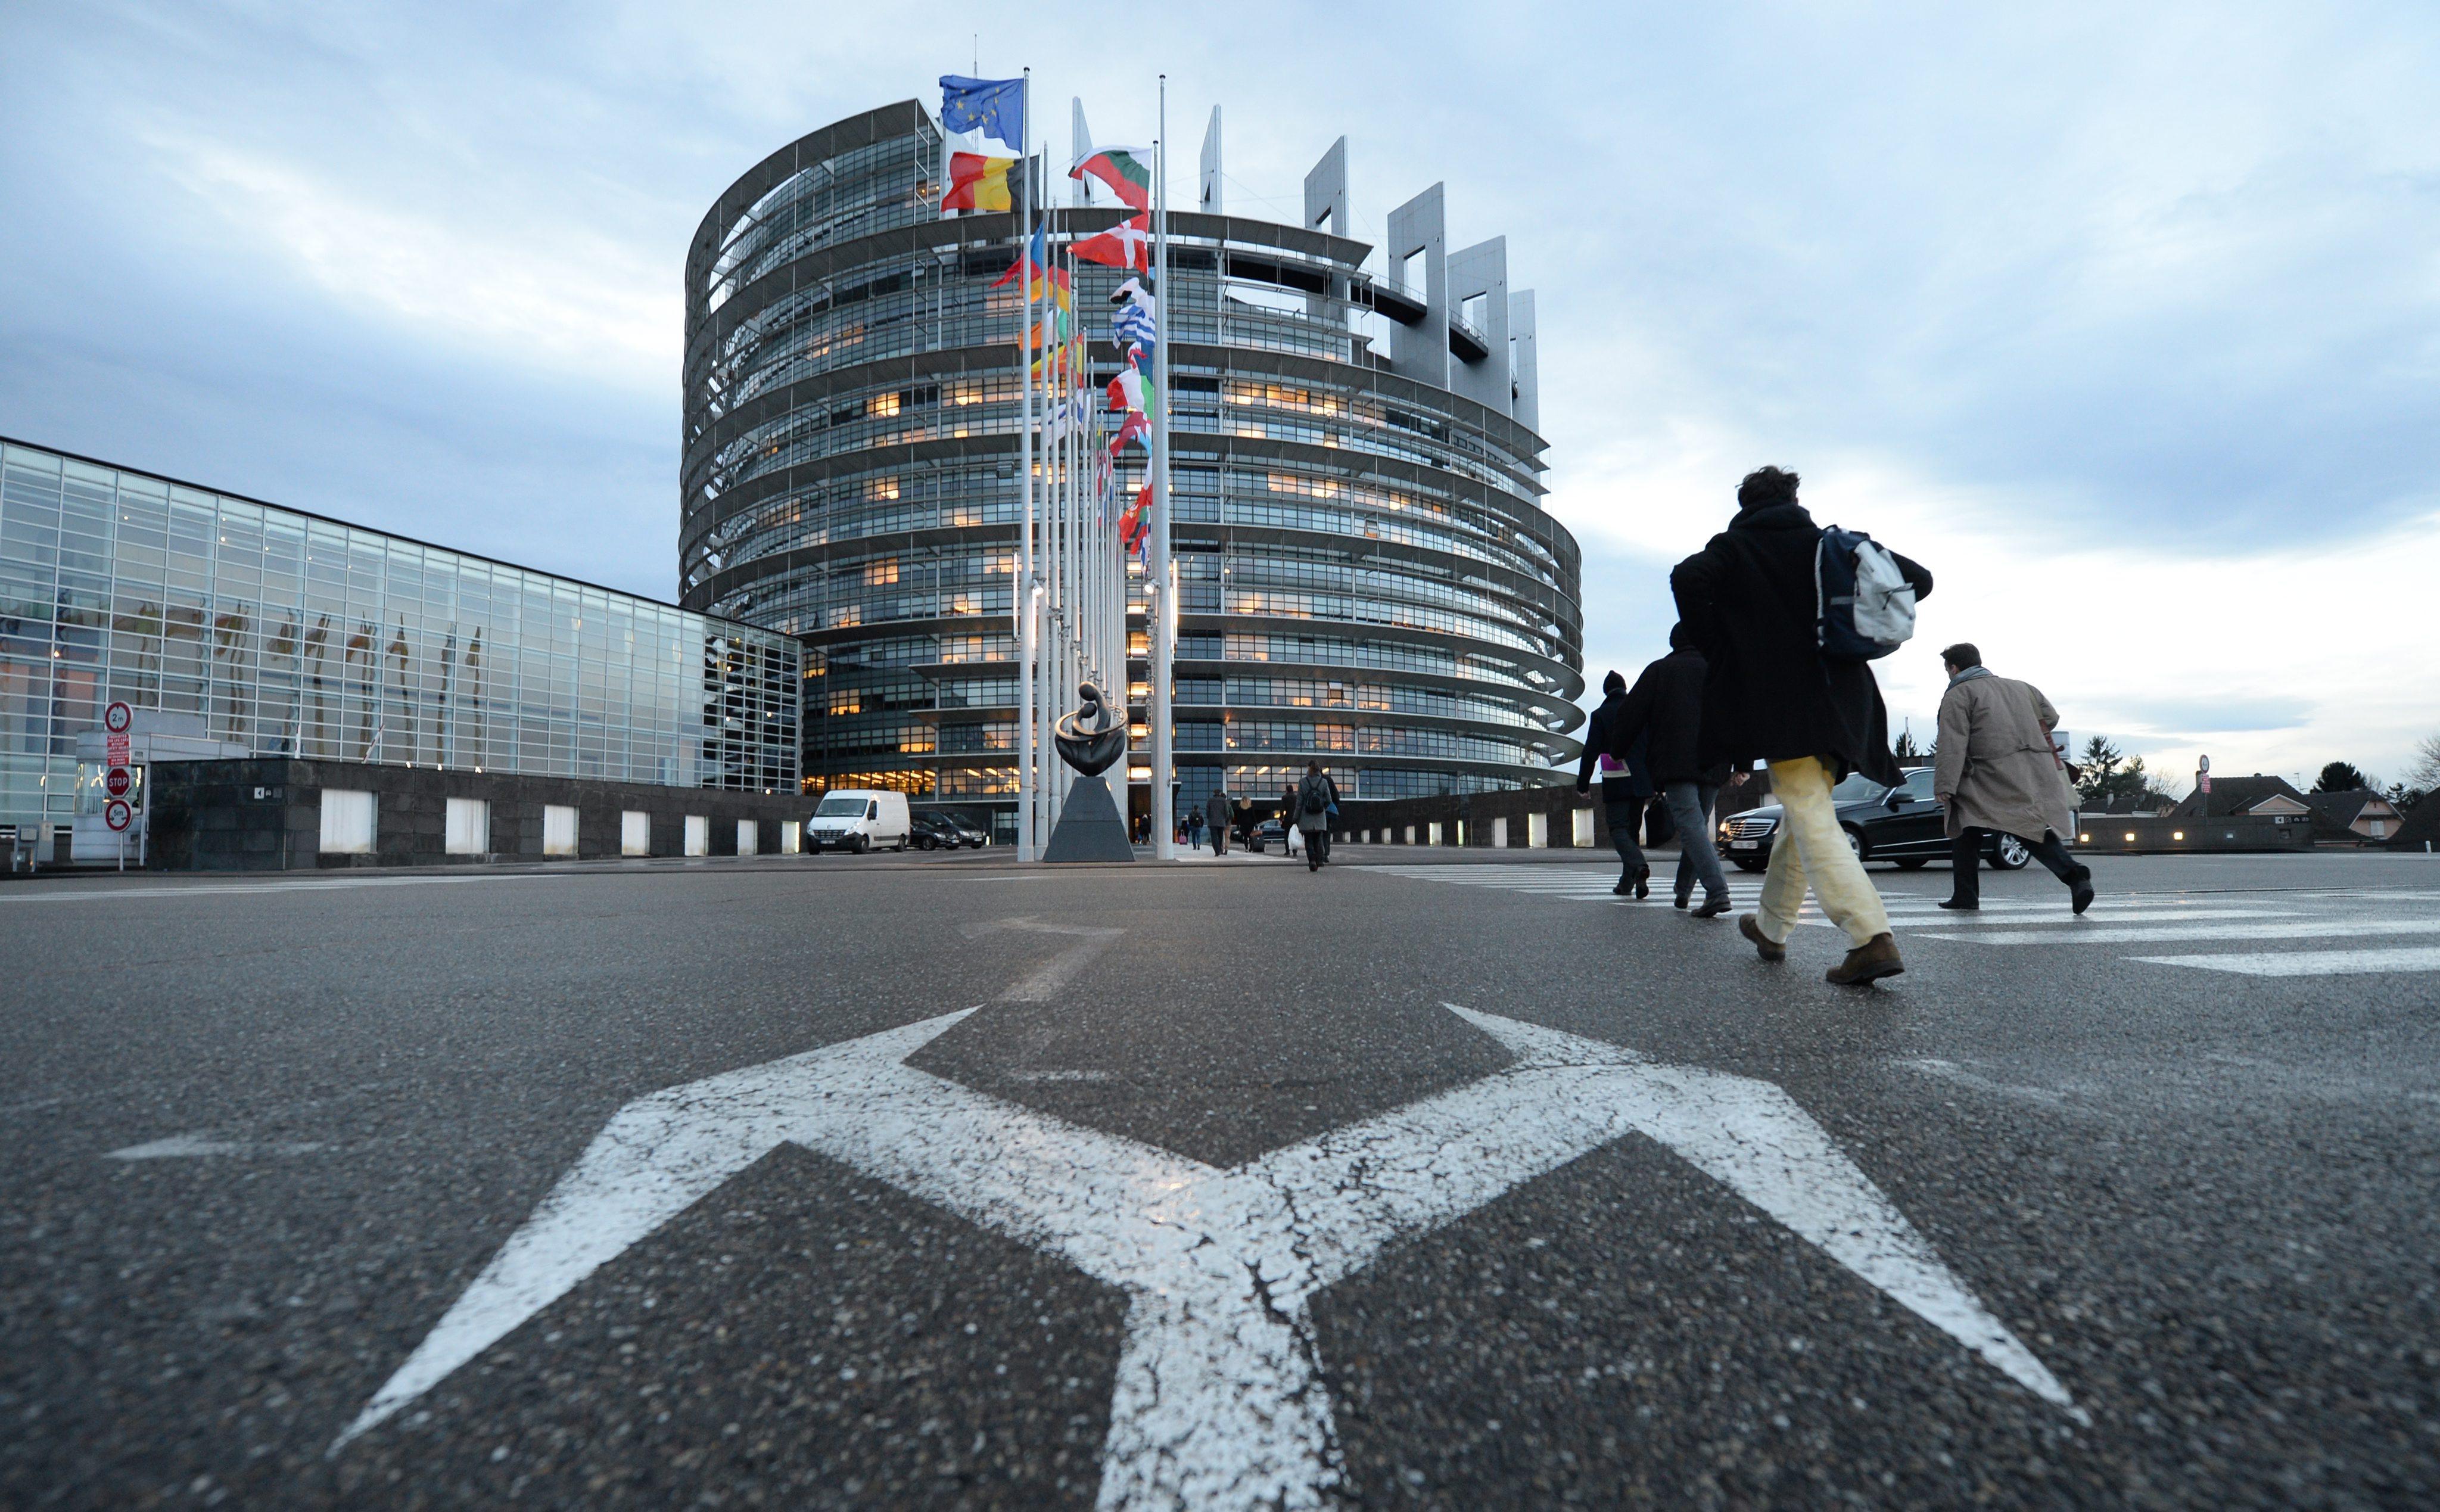 Βομβιστής-καμικάζι των Βρυξελλών «μπαινόβγαινε» στην Ευρωβουλή